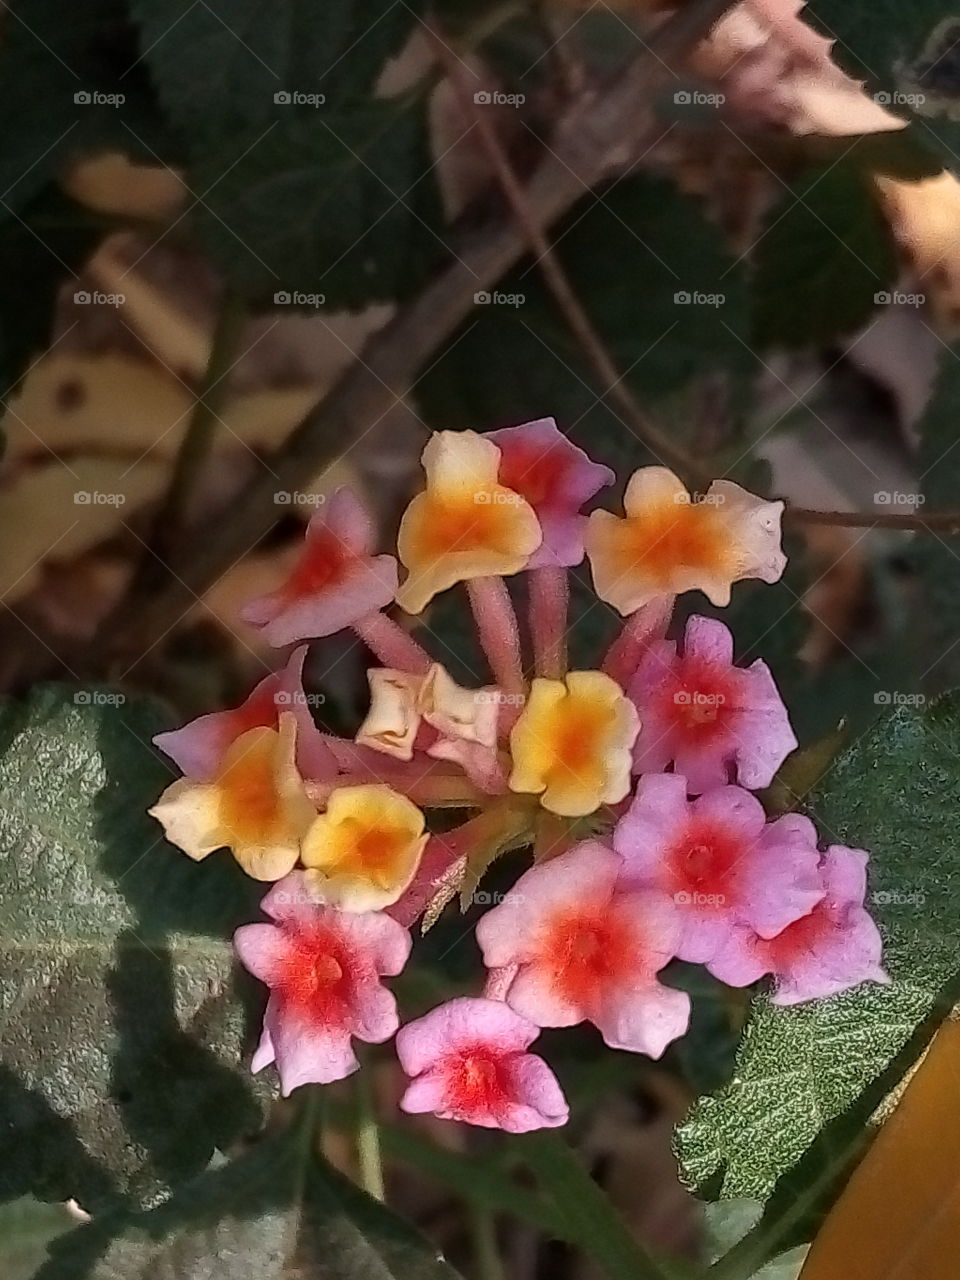 flowers gorochan